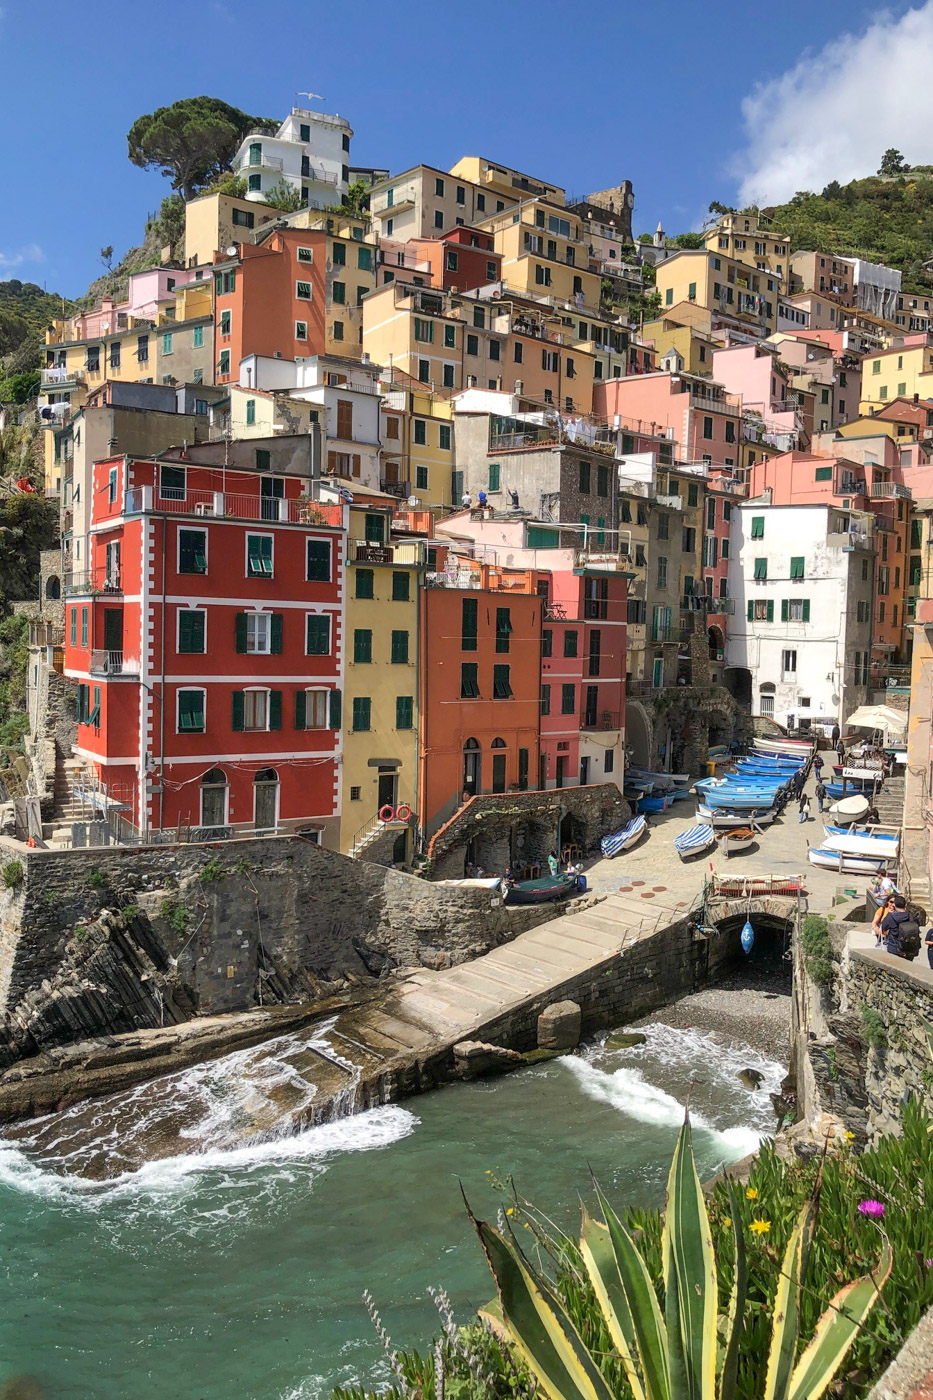 The colourful village of Riomaggiore